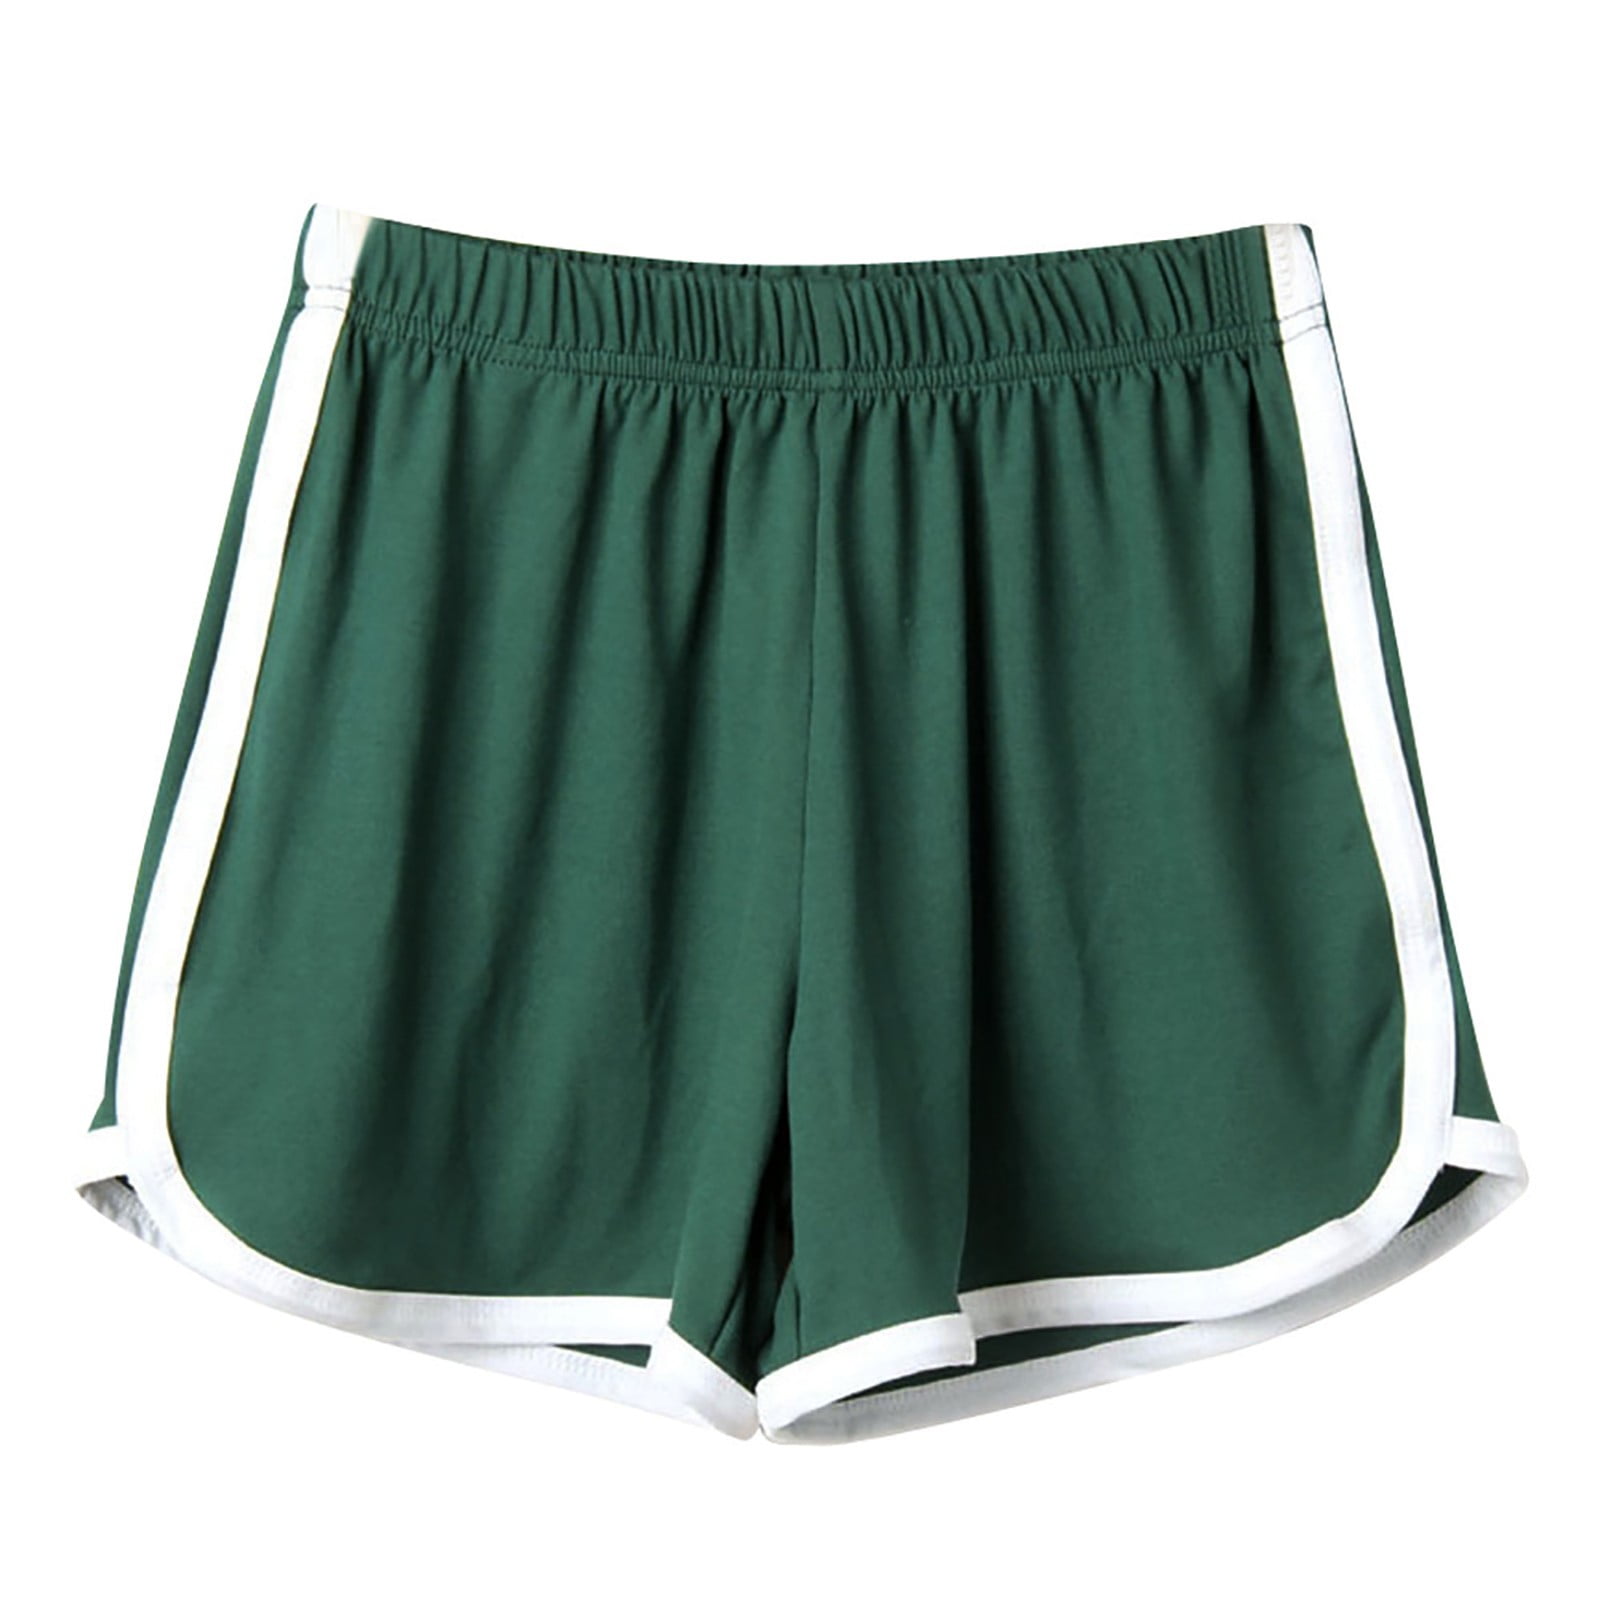 Women's Summer Beach Shorts High Waist Short Pants Casual Swim Trunks Hot  Pants | eBay